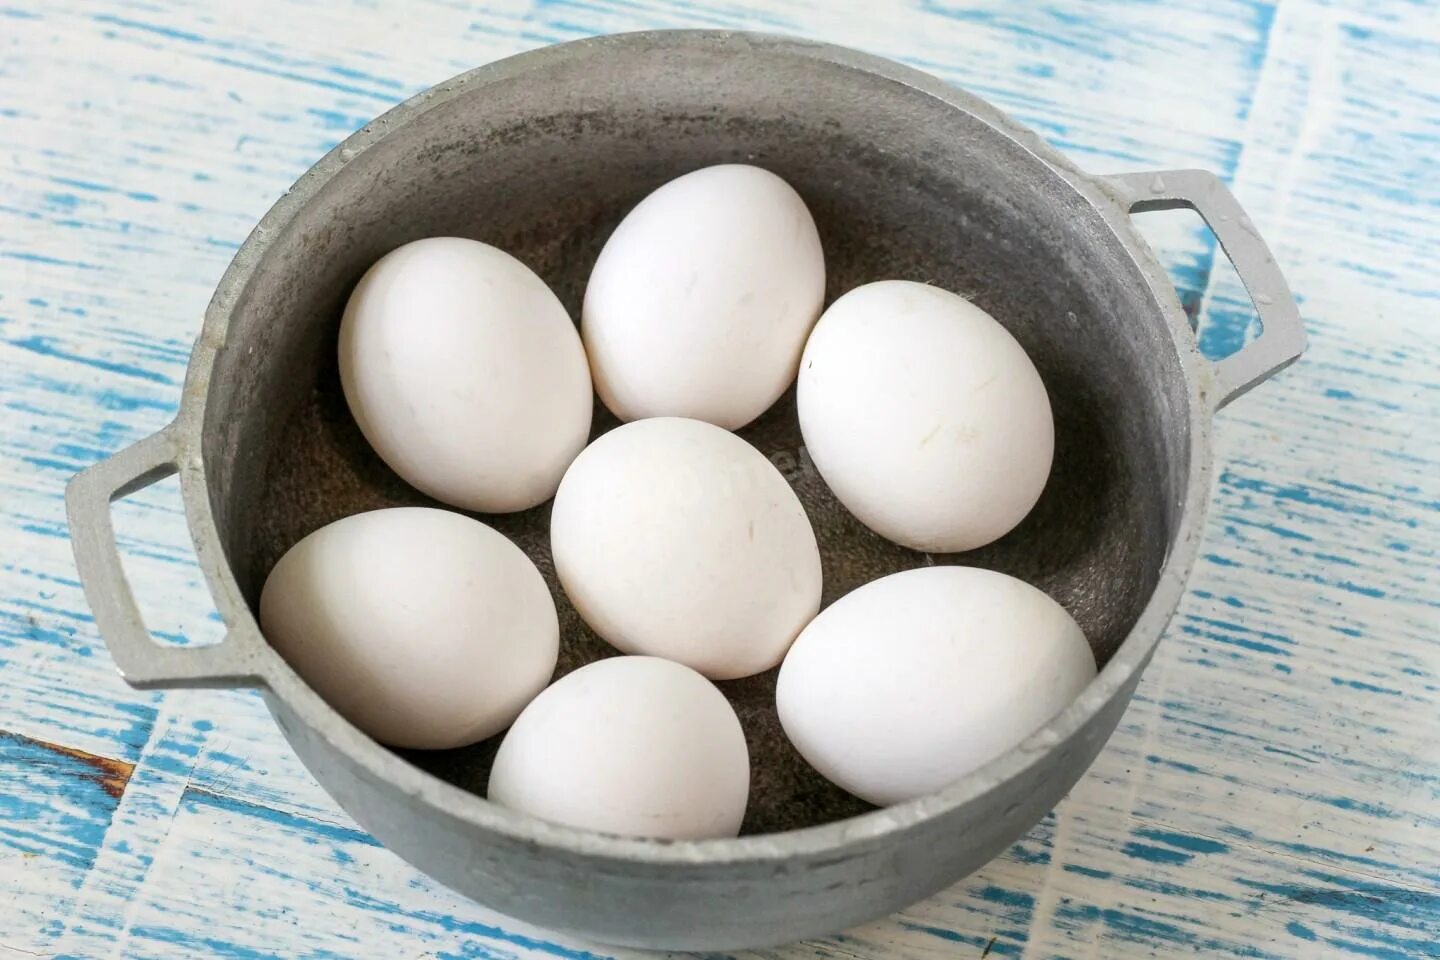 Купить 4 яйца. Яйца с луком. Яйца промывают. Яйца с зеленым луком. Промывка яиц.